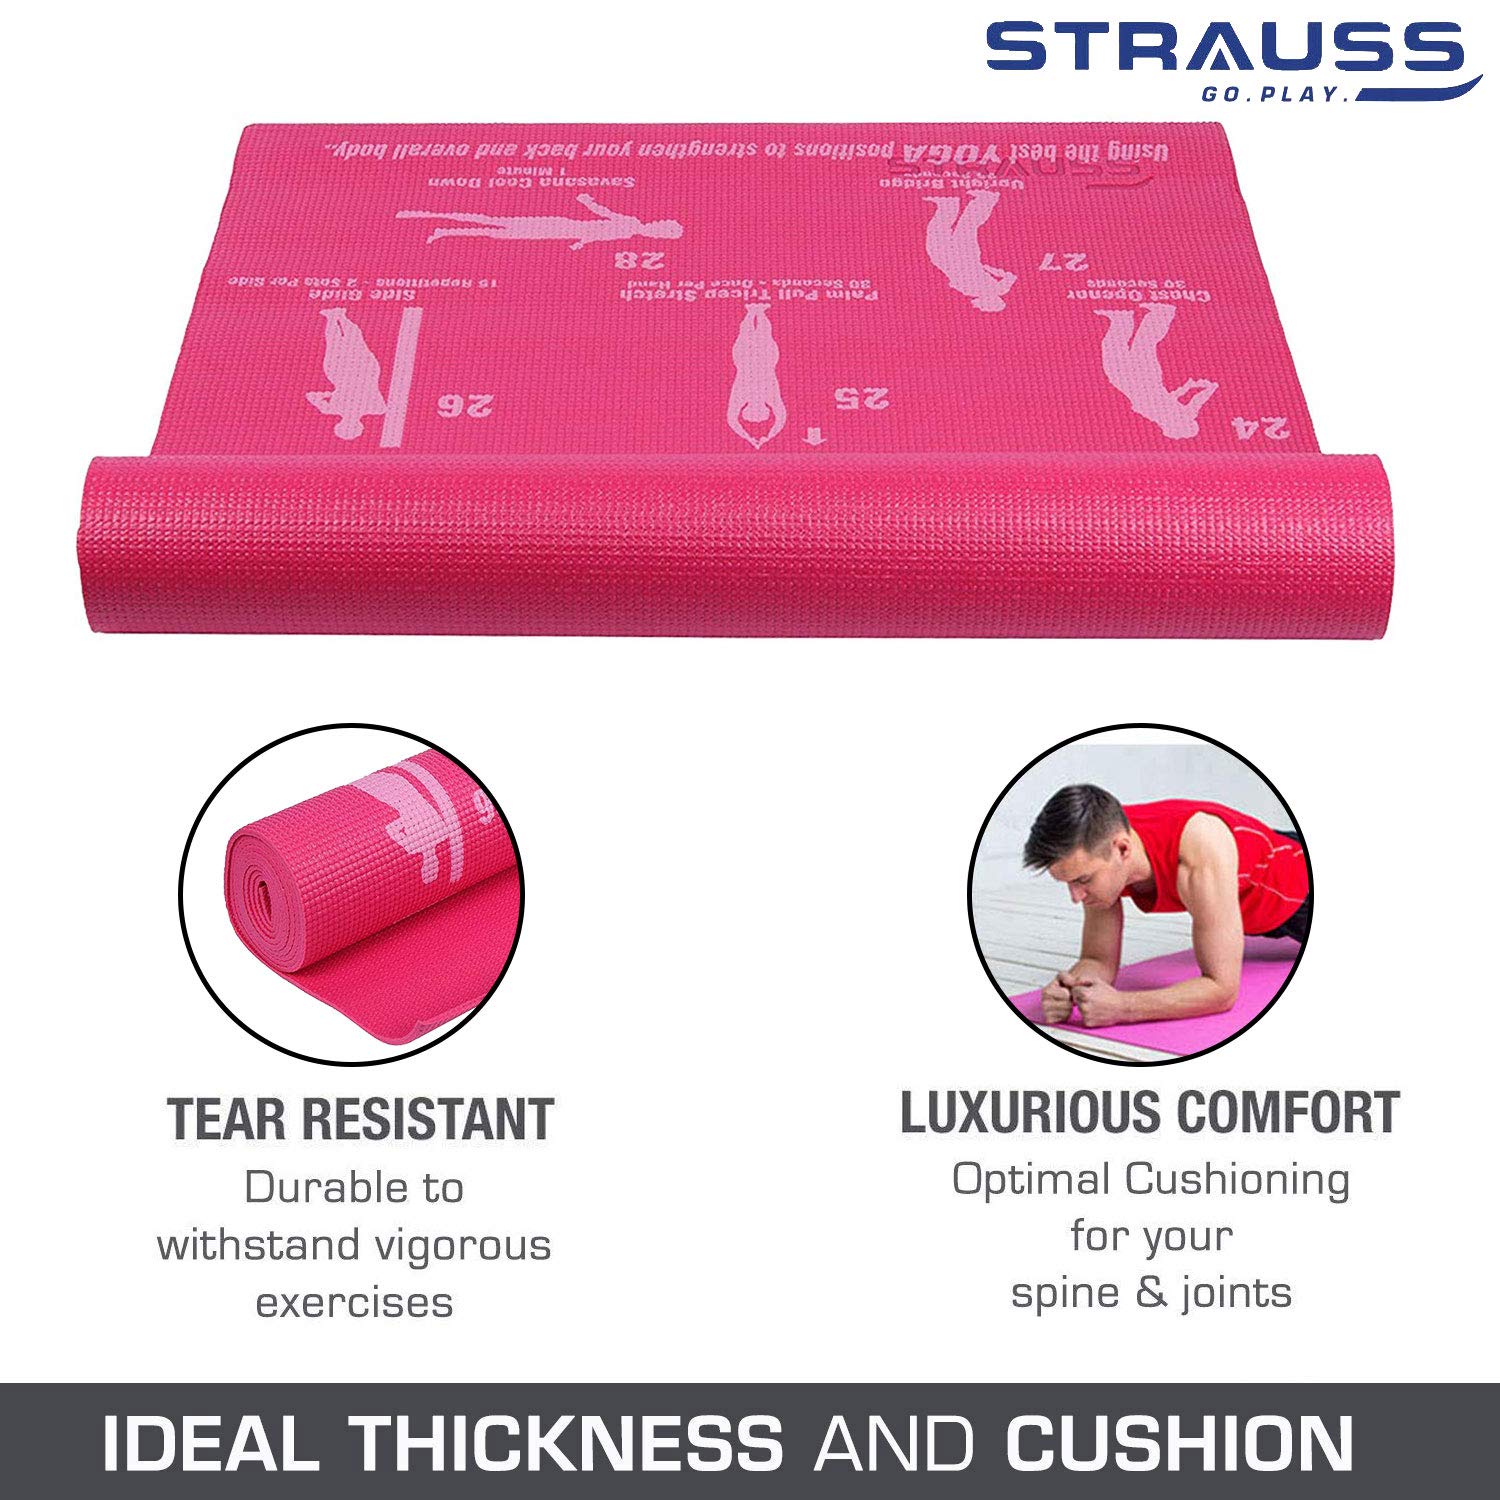 Strauss Yoga Mat 4mm Pink (Yogasana), Yoga Block Dual Color (Pink)  Pair and Yoga Belt (Orange)